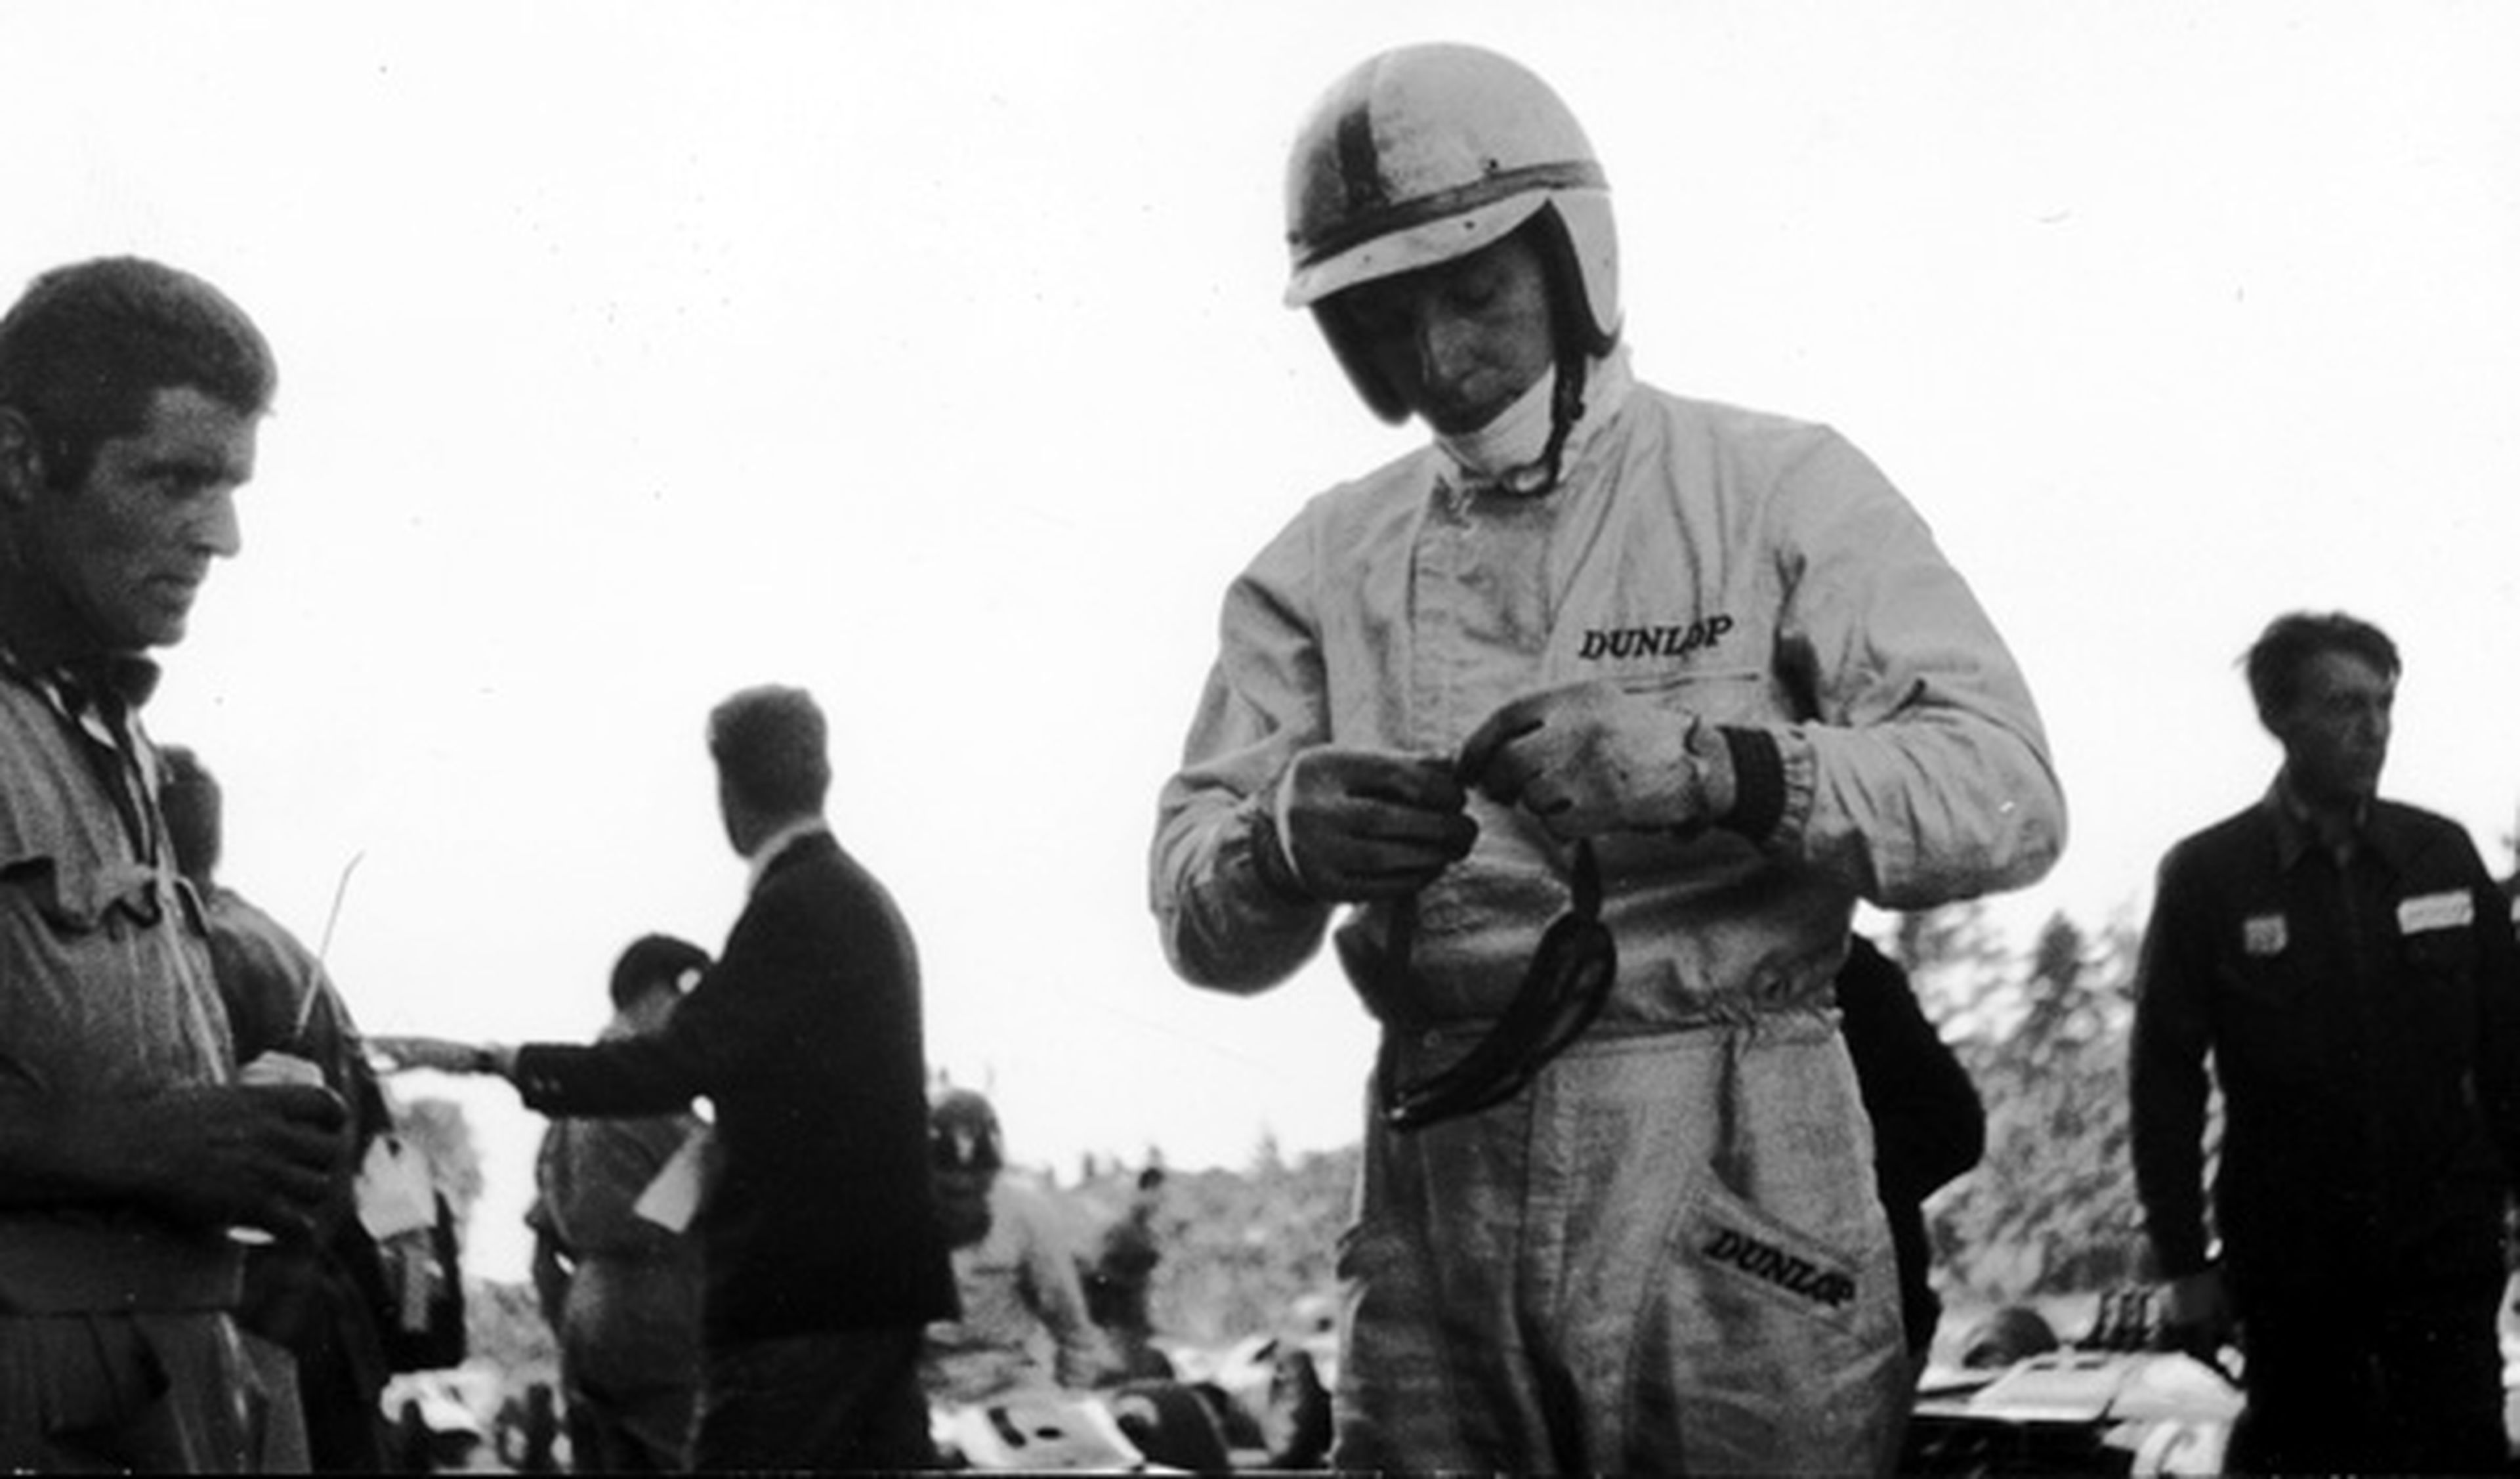 John Surtees, campeón del mundo de F1 y motos